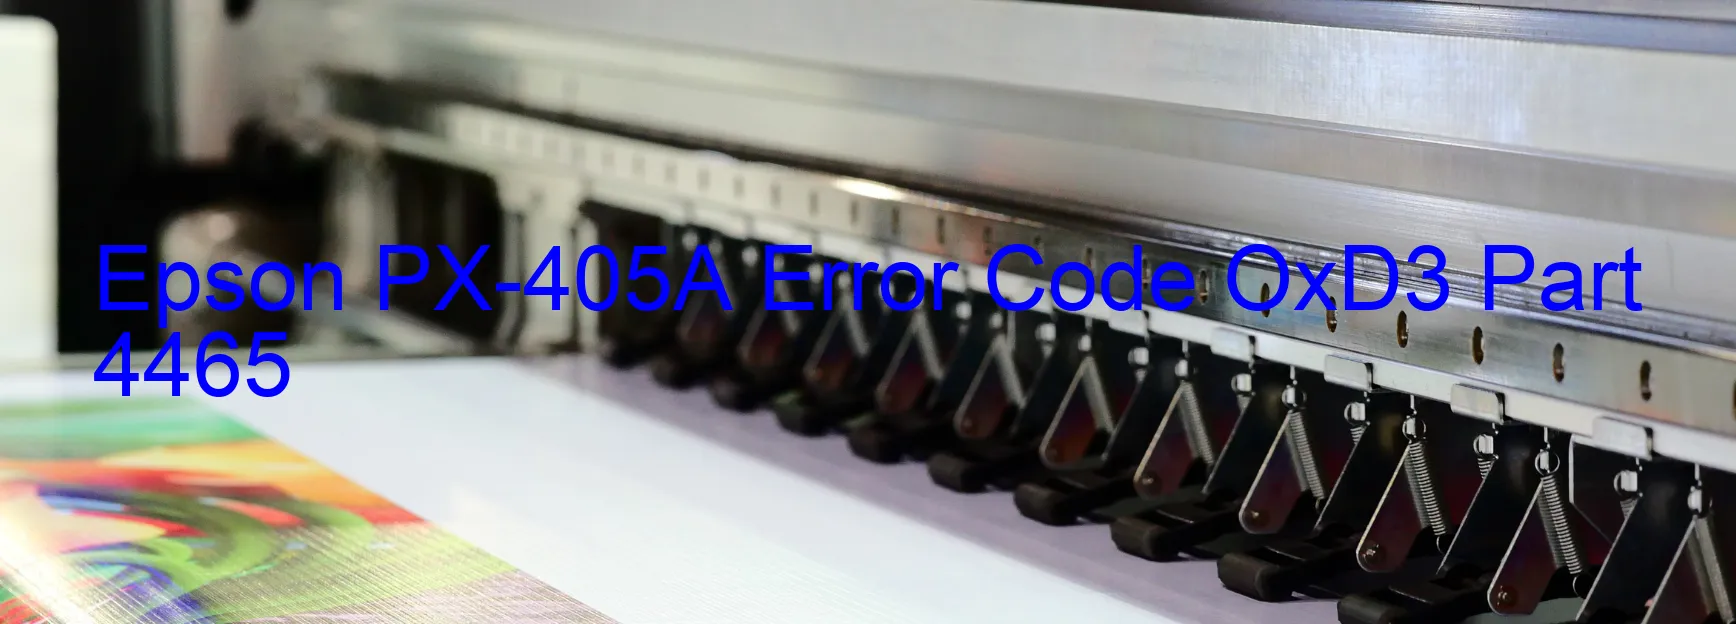 Epson PX-405A Error OxD3